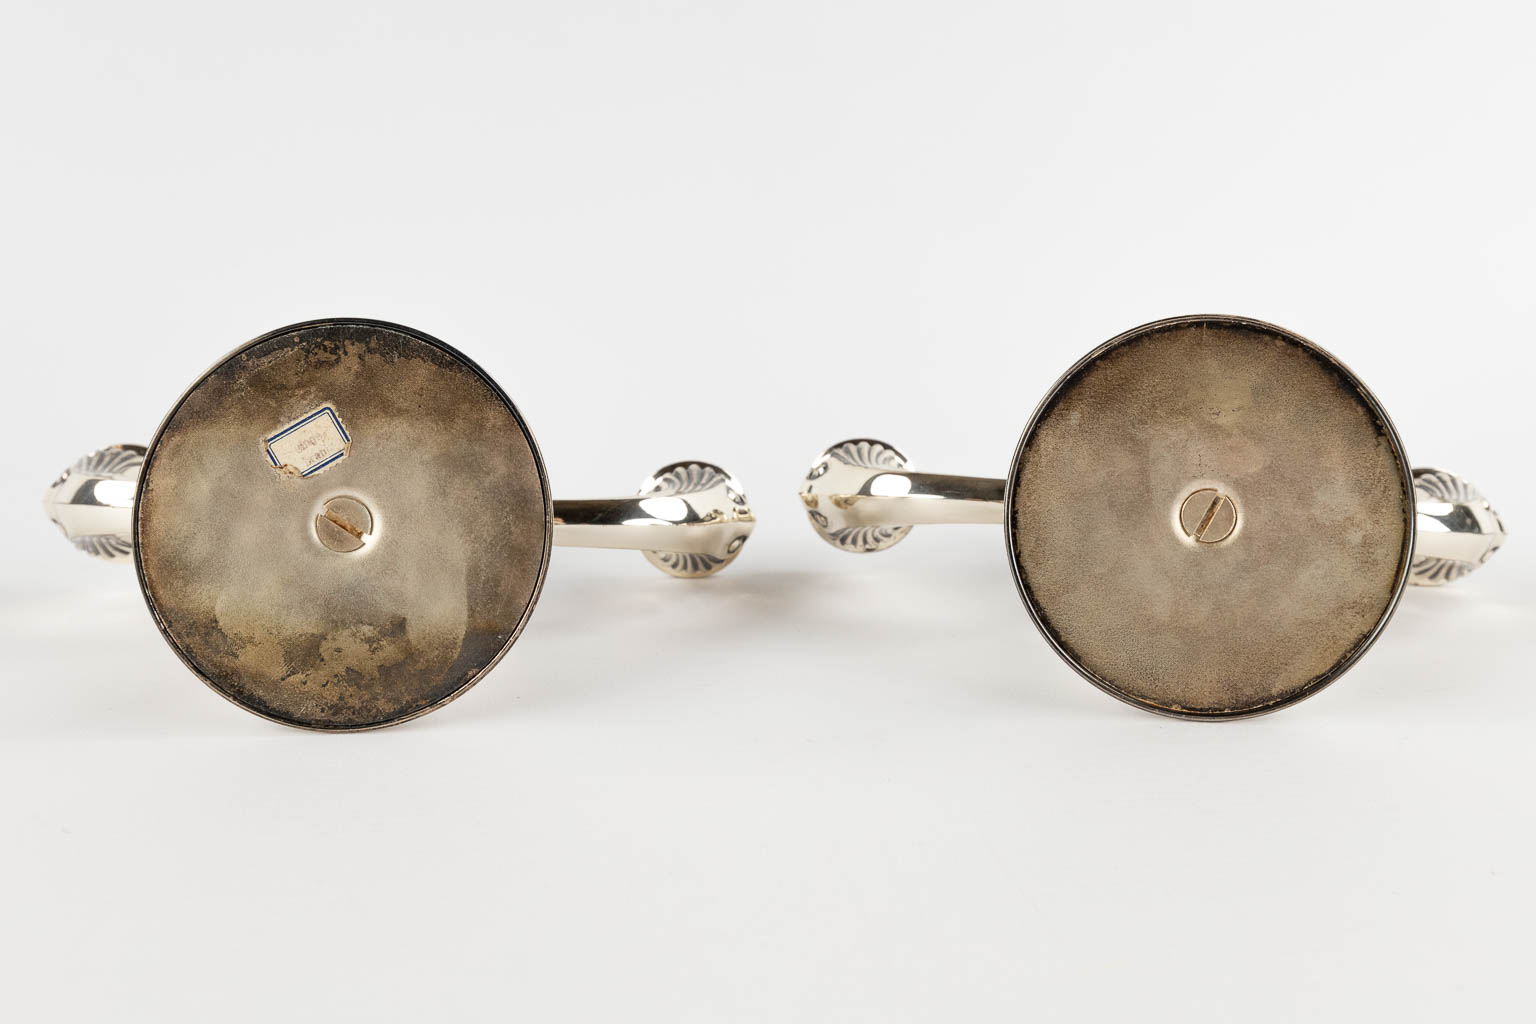 A pair of candelabra, silver. A835. gross: 589g (D:9 x W:20 x H:14 cm)